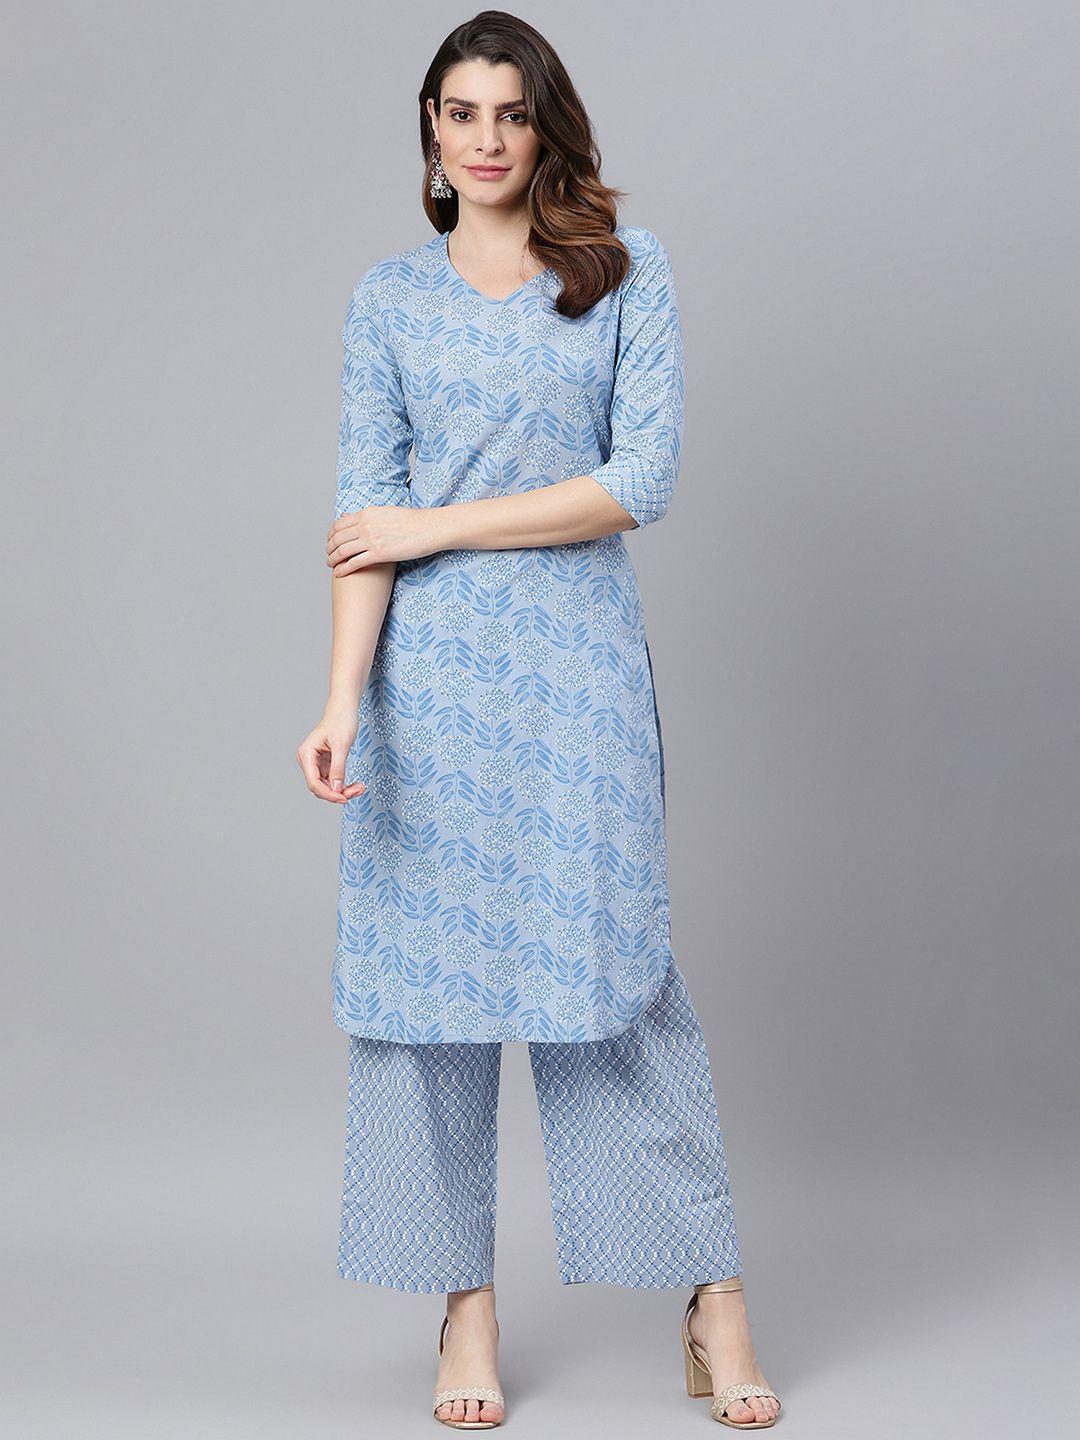 idalia women blue ethnic motifs printed pure cotton kurta with palazzos